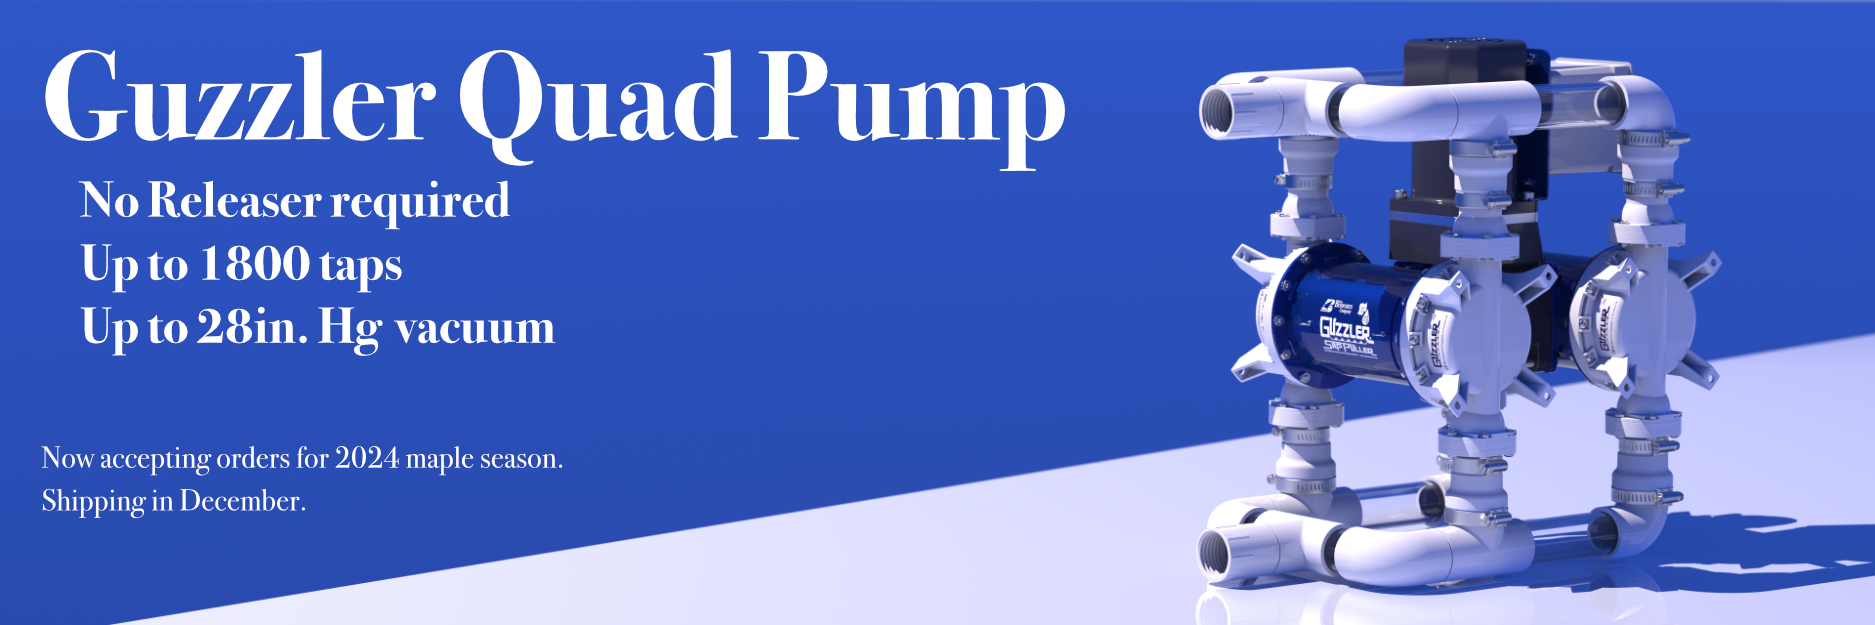 Guzzler Quad Pump